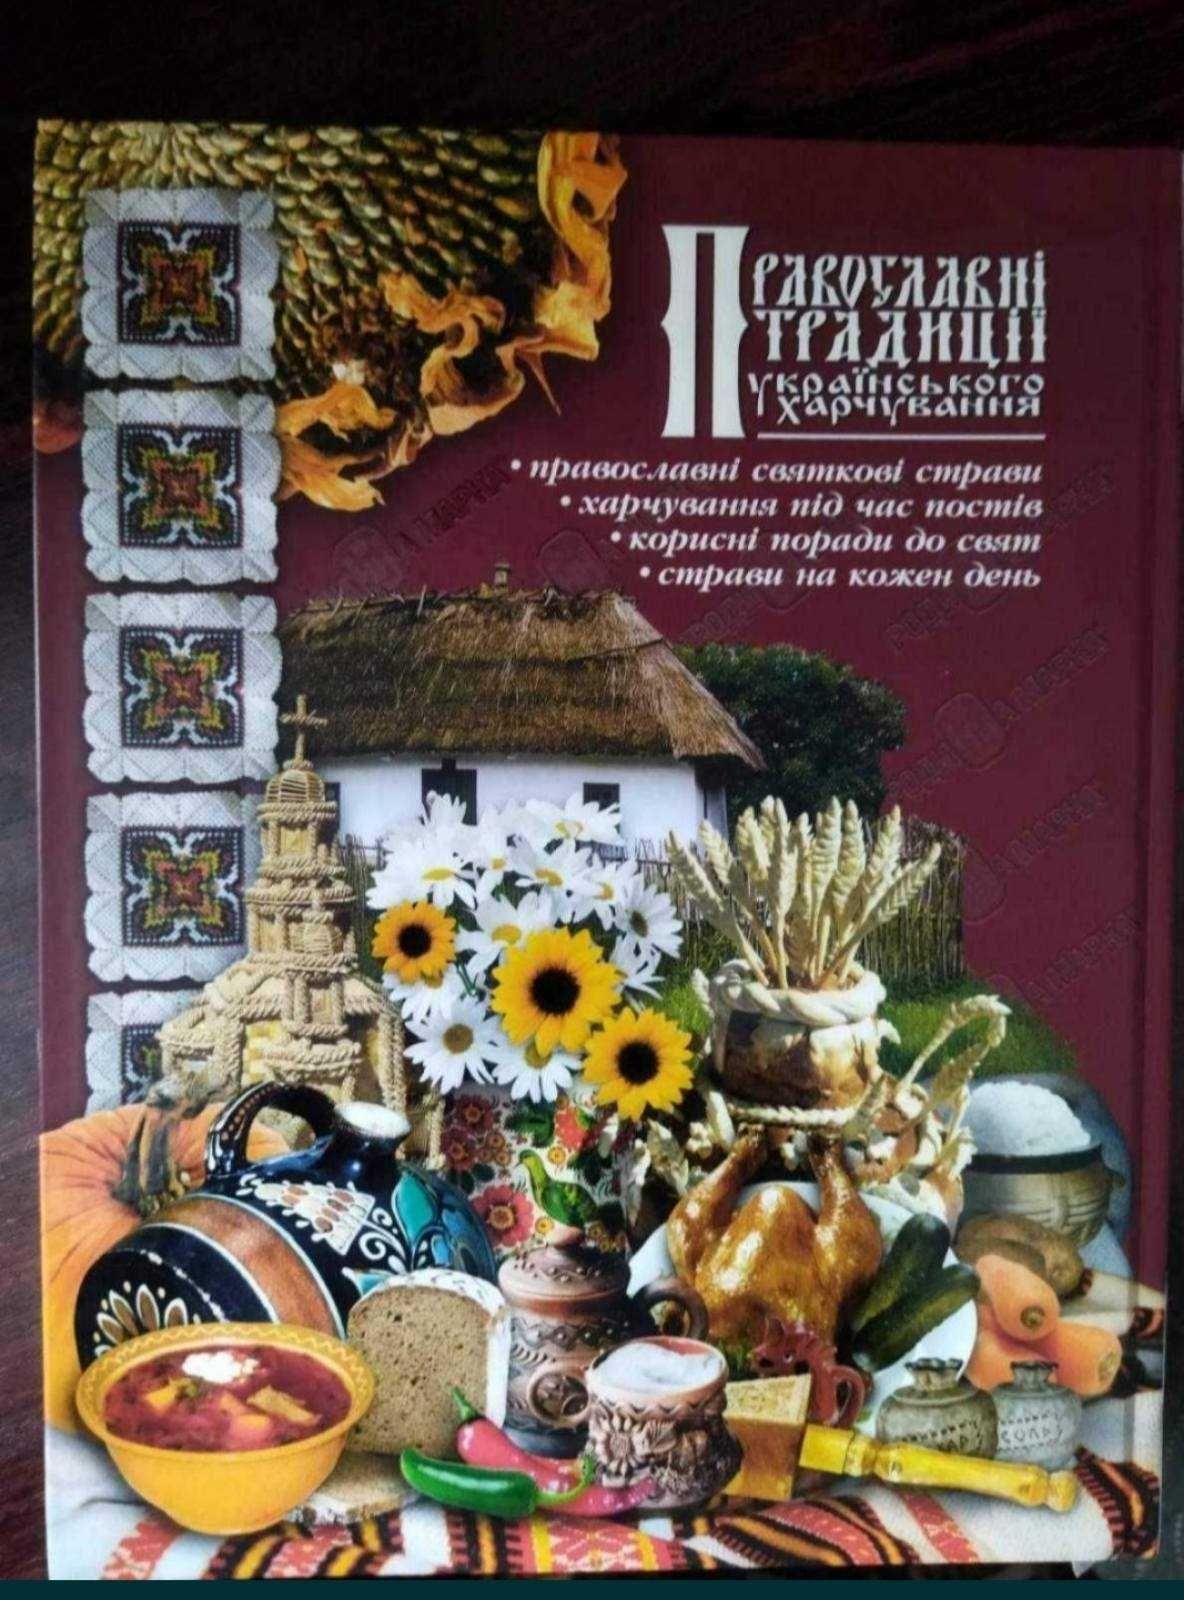 Православні традиції українського харчування (книга - подарунок)